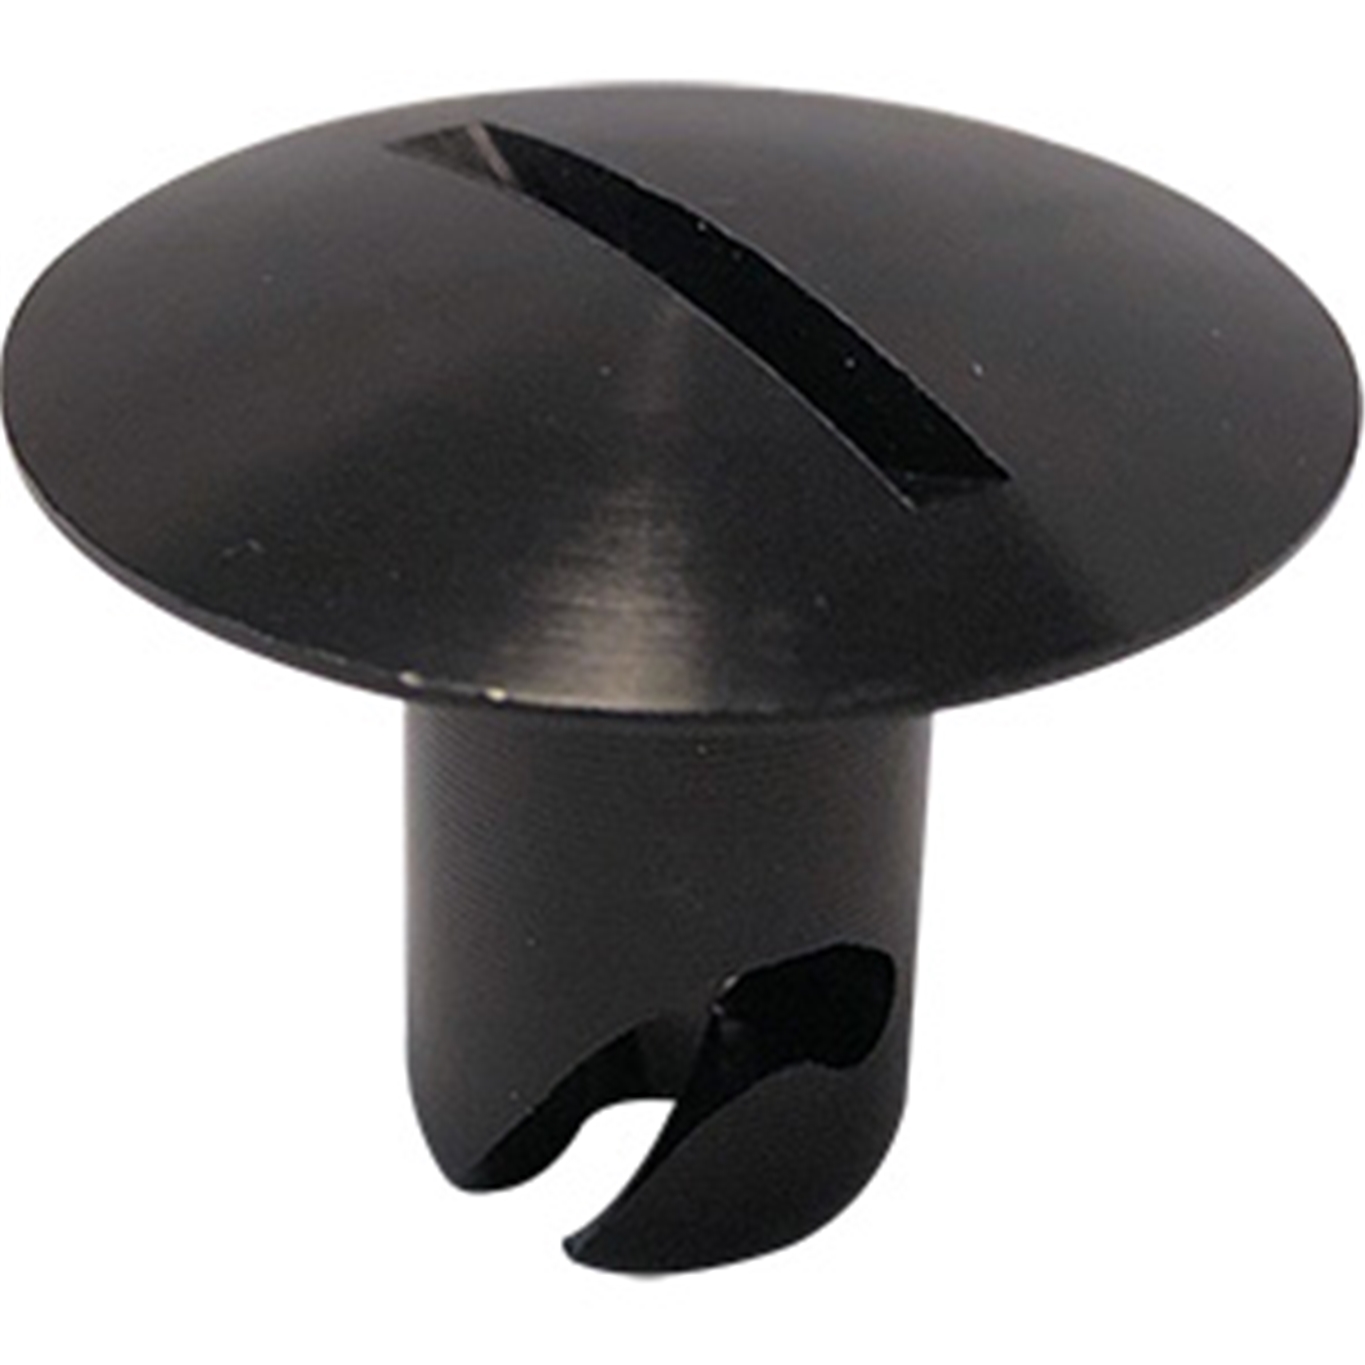 Panelfast Black Big Oval Head Aluminum 7/16".500 Grip